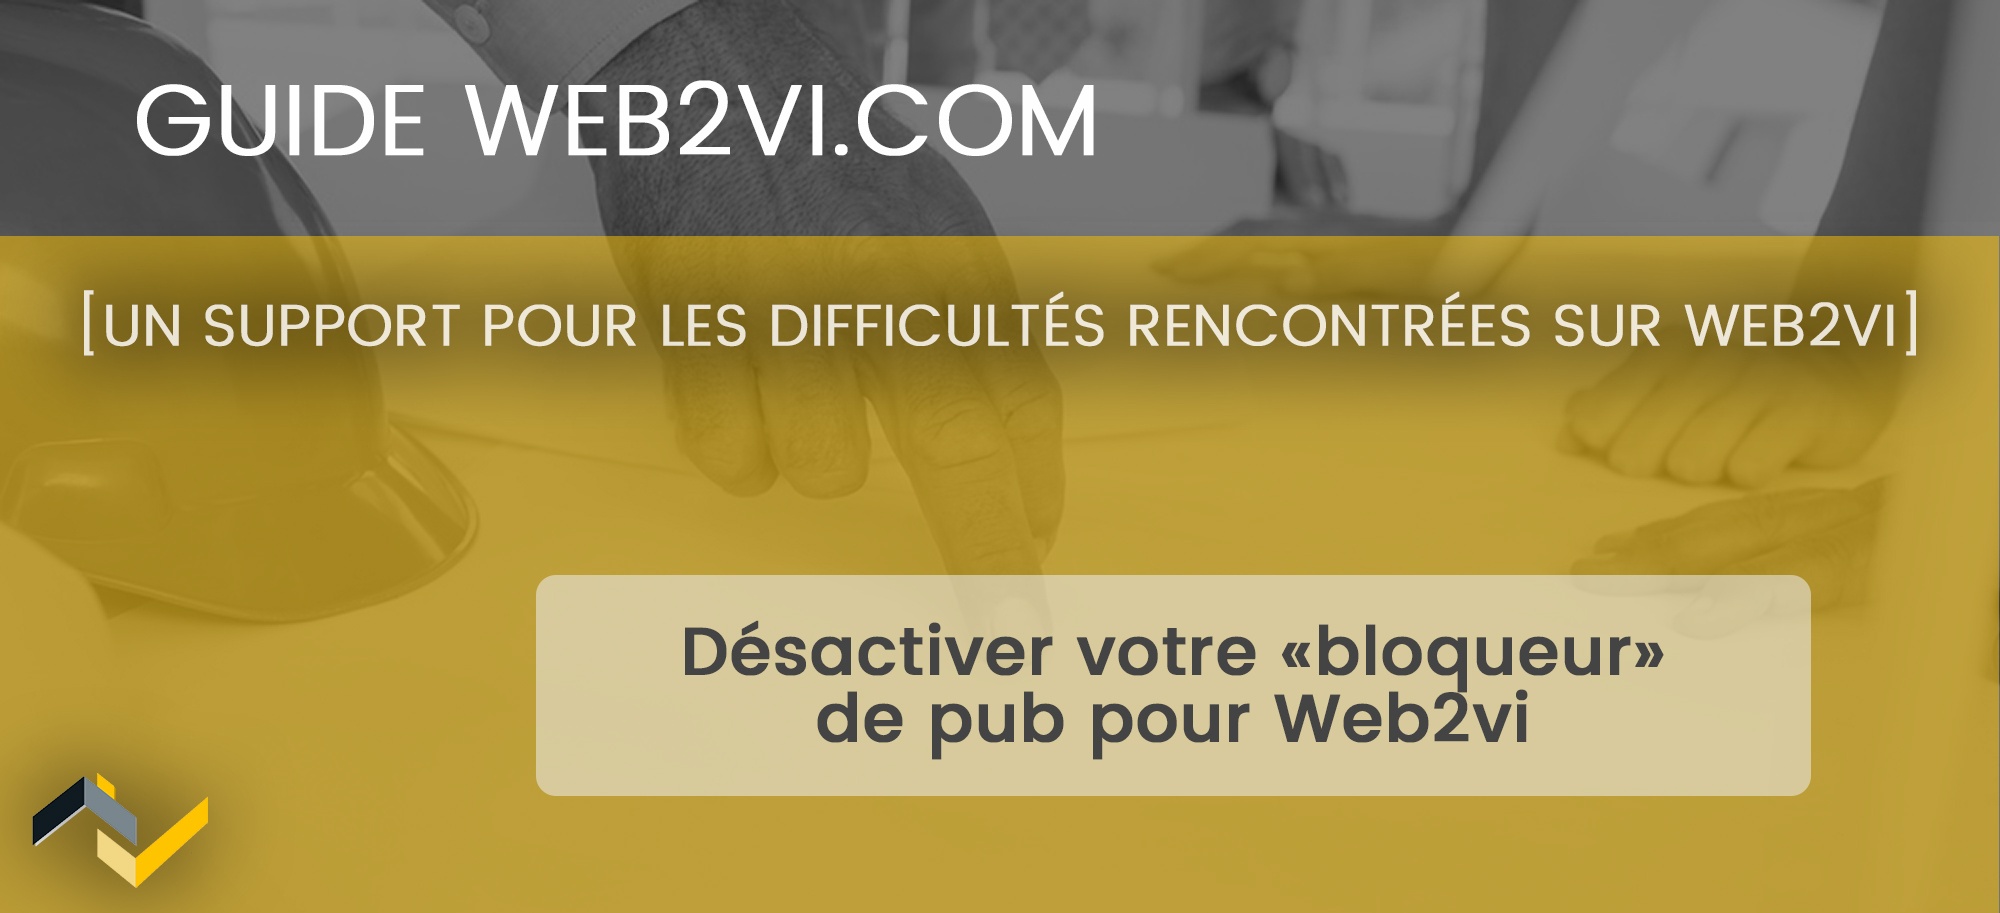 Désactiver les "bloqueurs" de pub pour l'utilisation de Web2vi